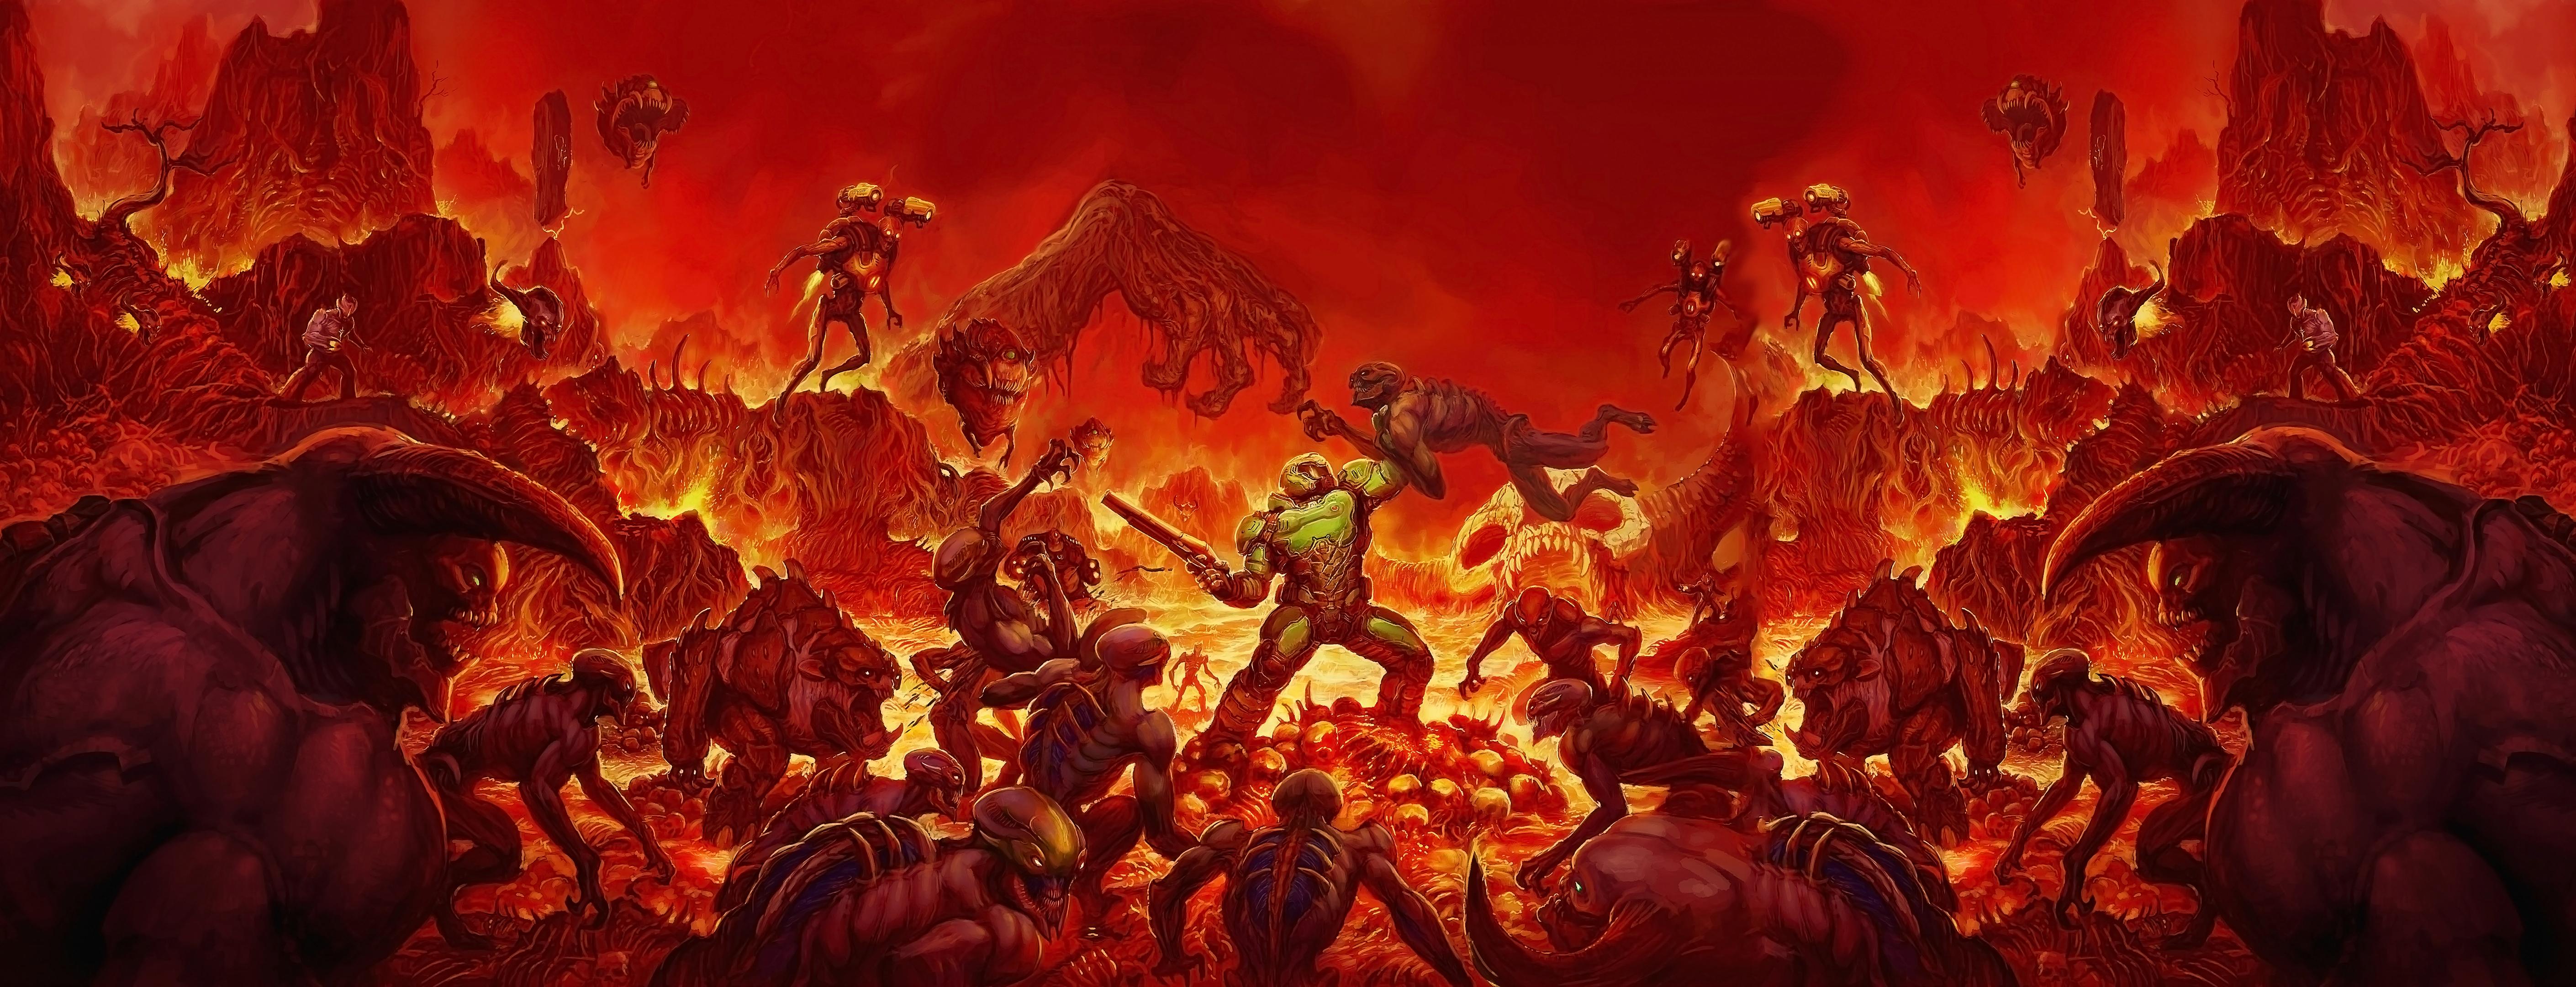 Doom 2016 Video Games Doom Game Video Game Art Hell Demon 5640x2160 Wallpaper